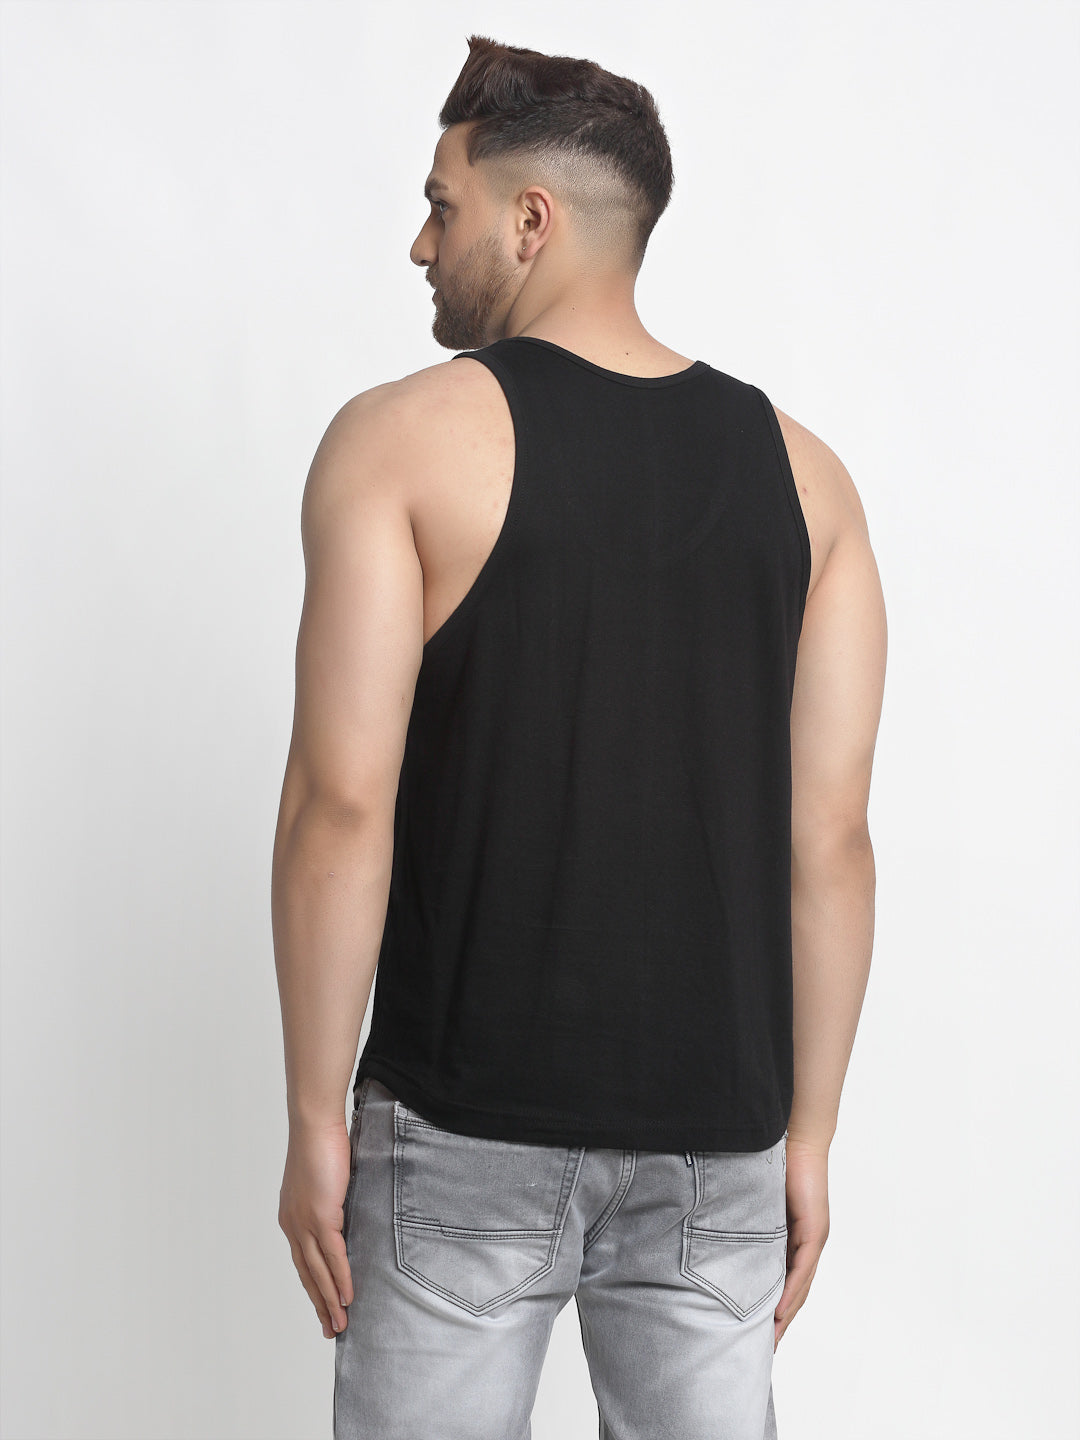 Men's Pack of 2 Coral & black Printed Gym vest - Friskers